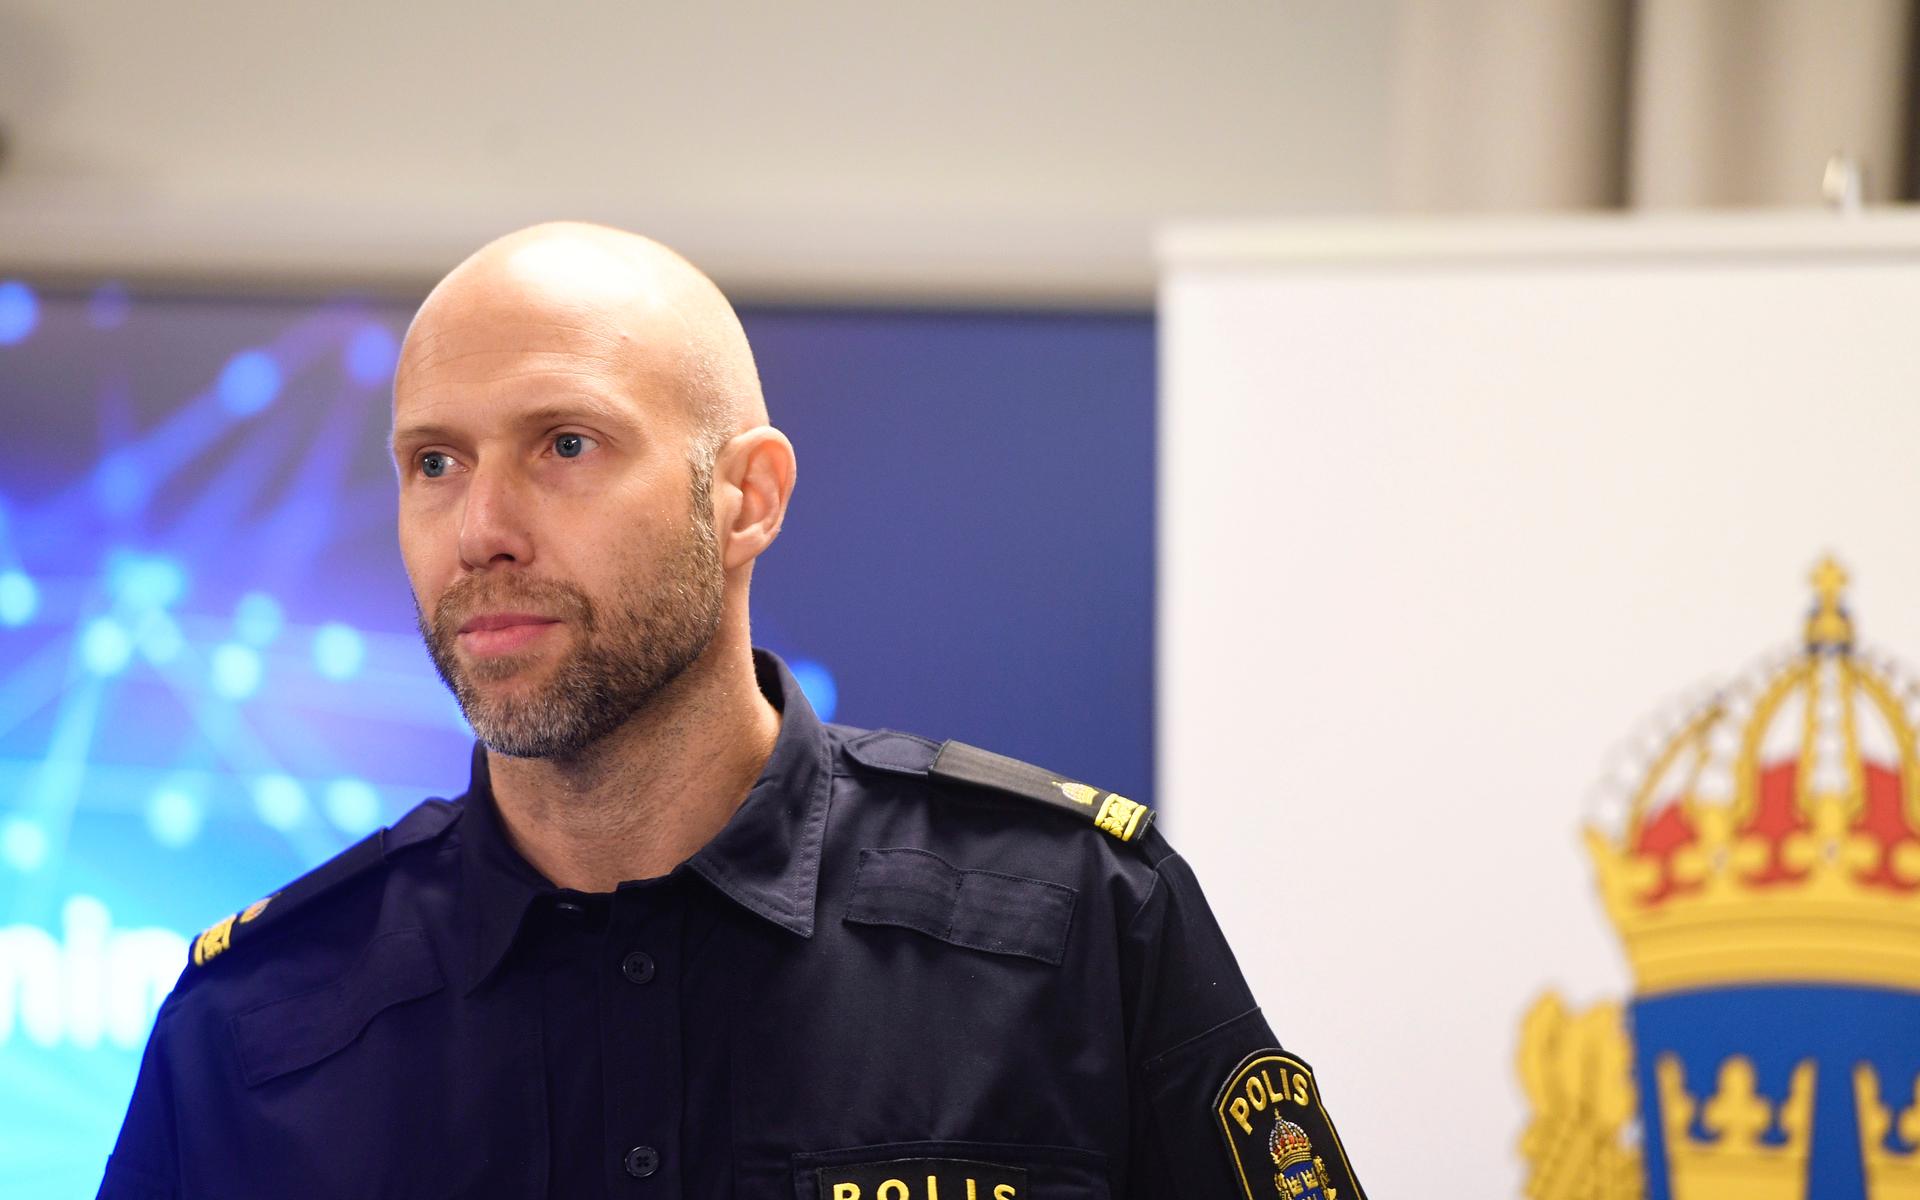 Björn Eriksson, gruppchef på Noa, menar att ansvariga för cyberattacker inte alltid kommer kunna ställas inför rätta i Sverige: ”För att kunna bekämpa grupperingar som begår brott i industriell skala, måste vi möta dem med samma kraftfulla nivå som det här samarbetet visar på.”